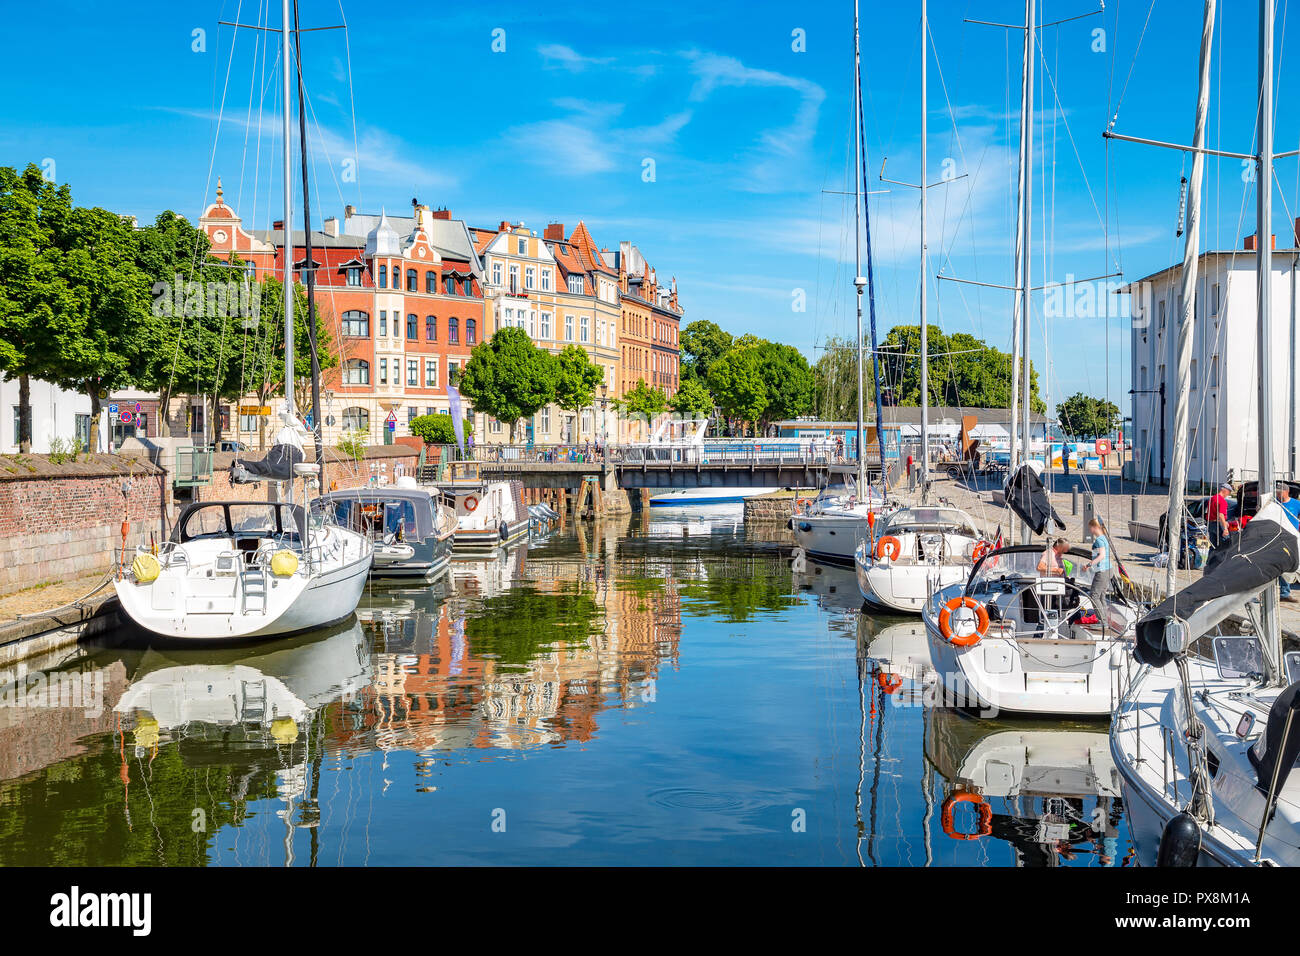 Classic vue panoramique de la ville hanséatique de Stralsund avec bateaux à voile en été, Mecklenburg-Vorpommern, Allemagne Banque D'Images